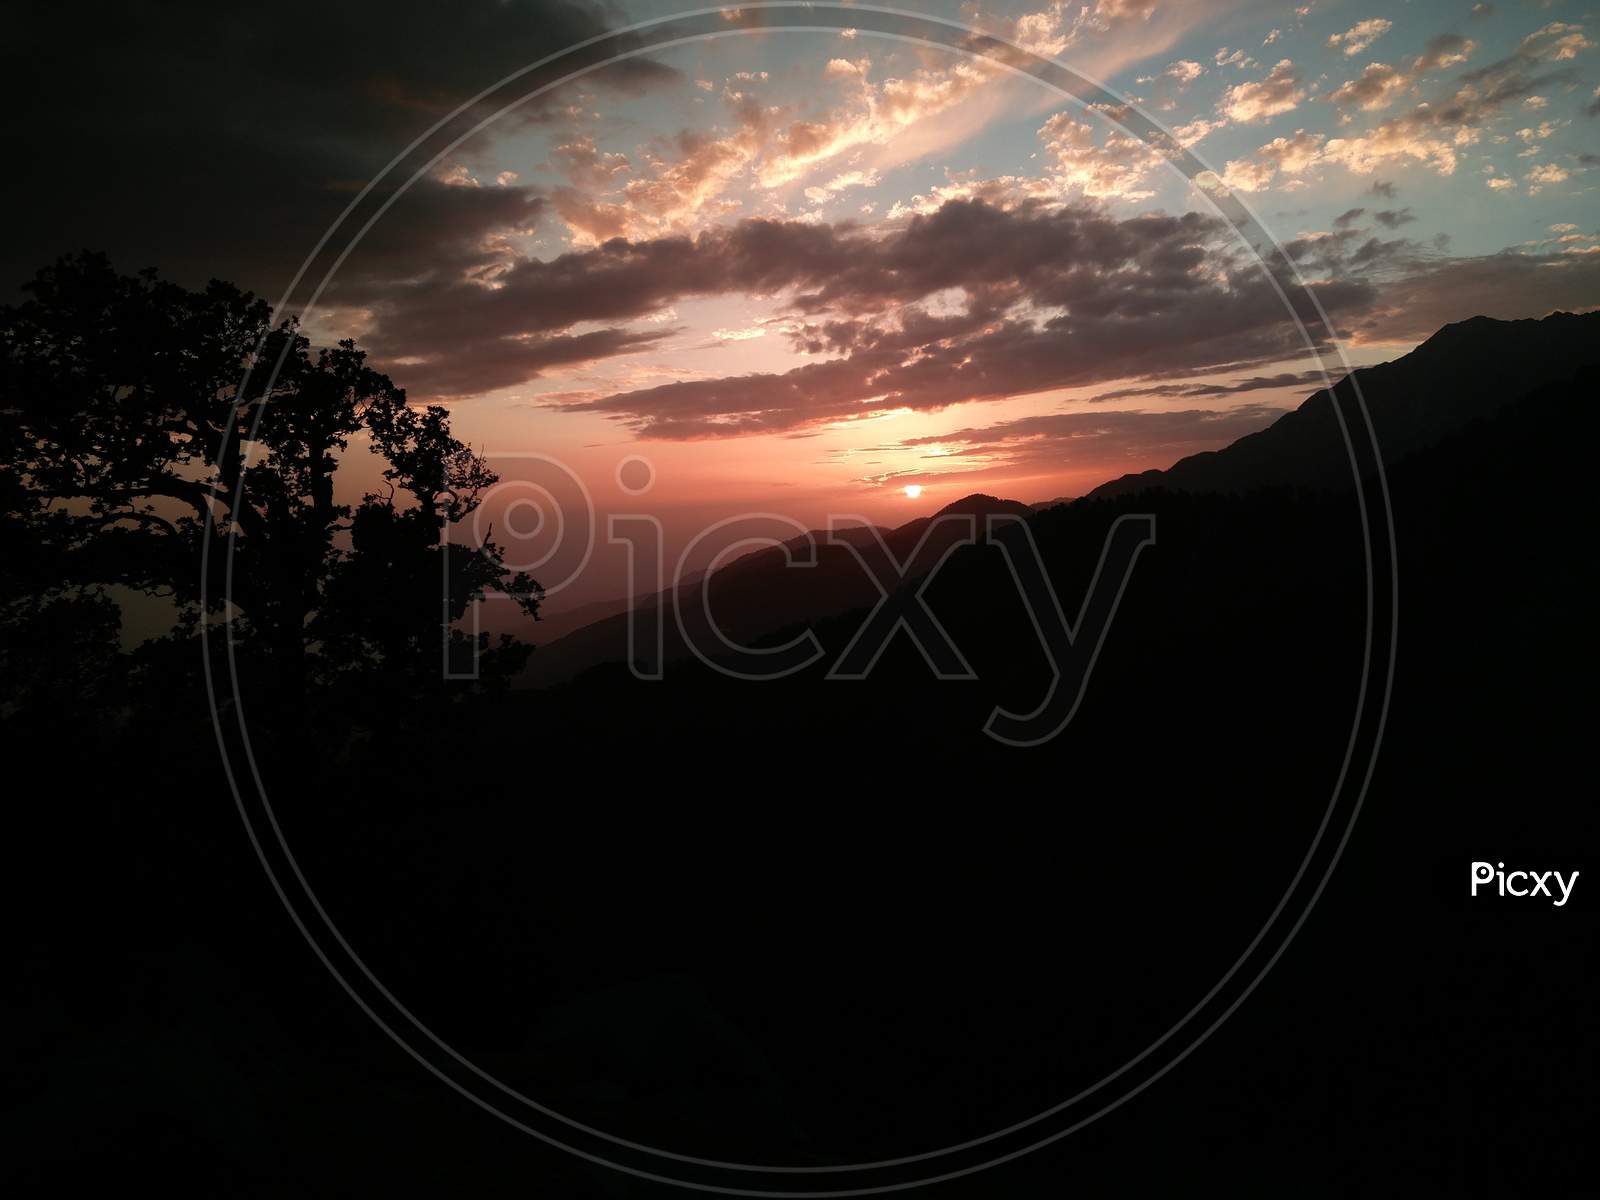 Sunset view in India Himalayas mountains Dharamshala Mcleodganj triund Himachal Pradesh